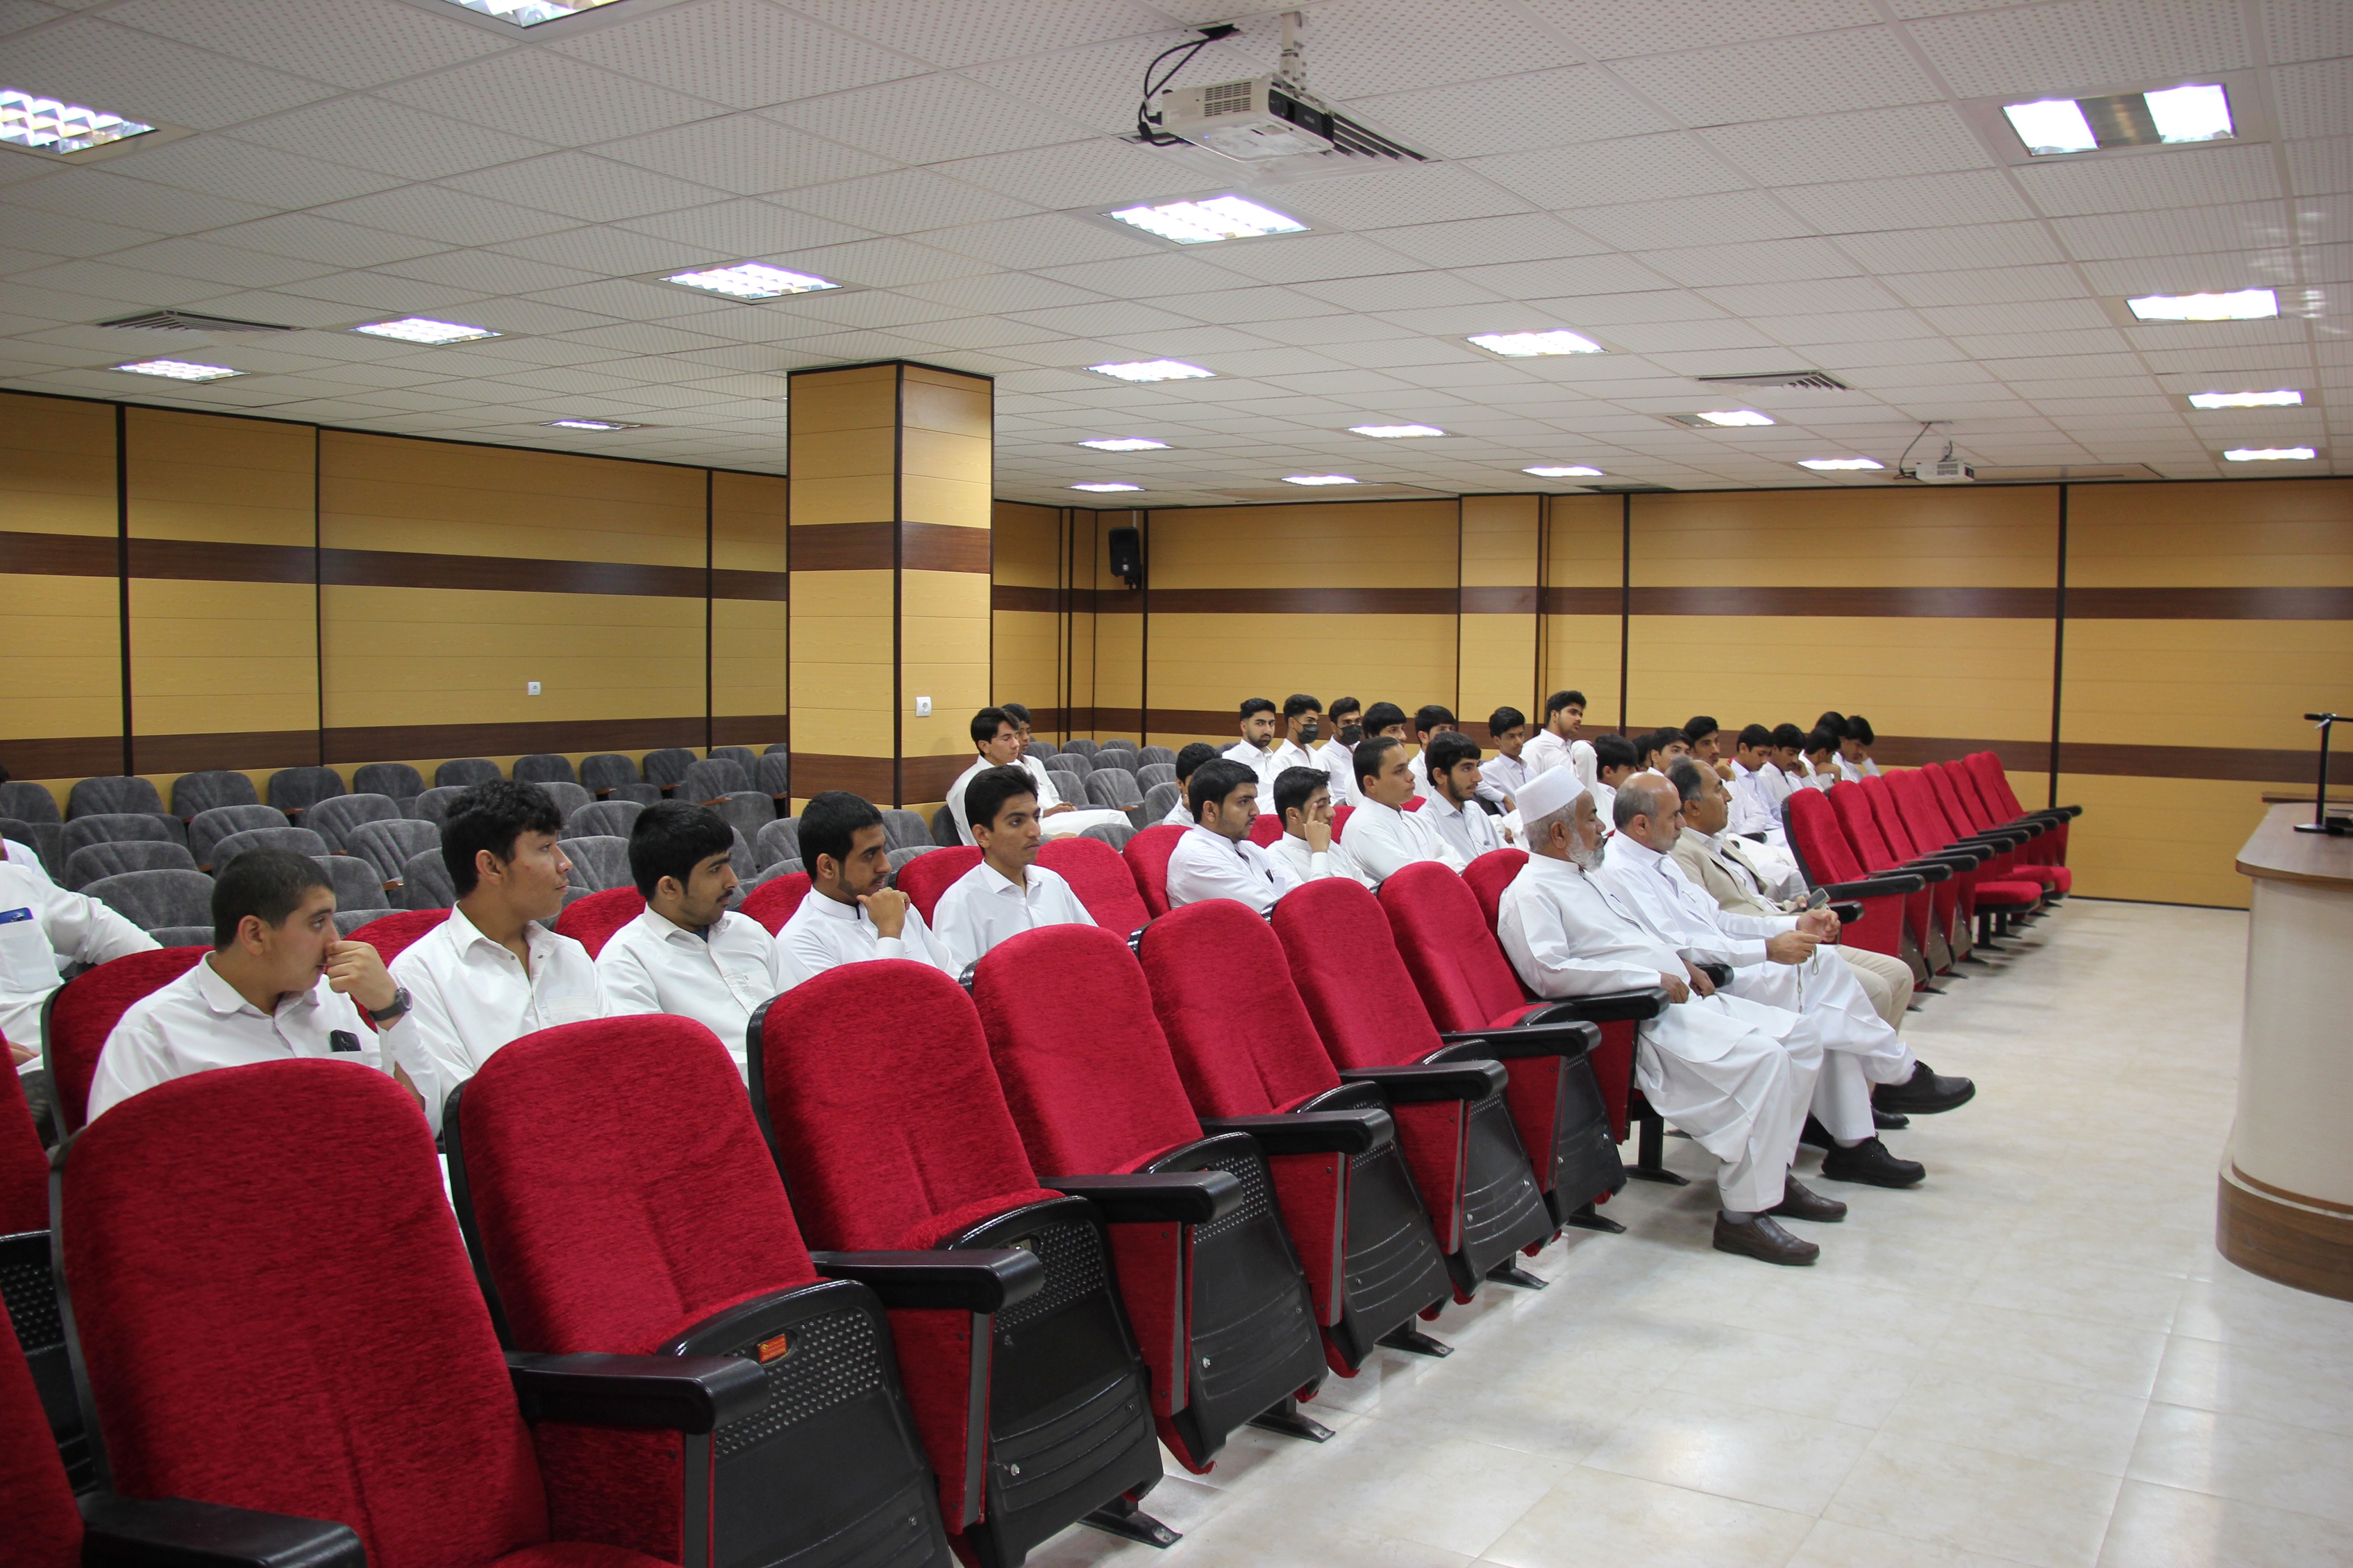 بازدید دانش آموزان مجتمع آموزشی بهزاد شهرستان سراوان از موسسه آموزش عالی هاتف